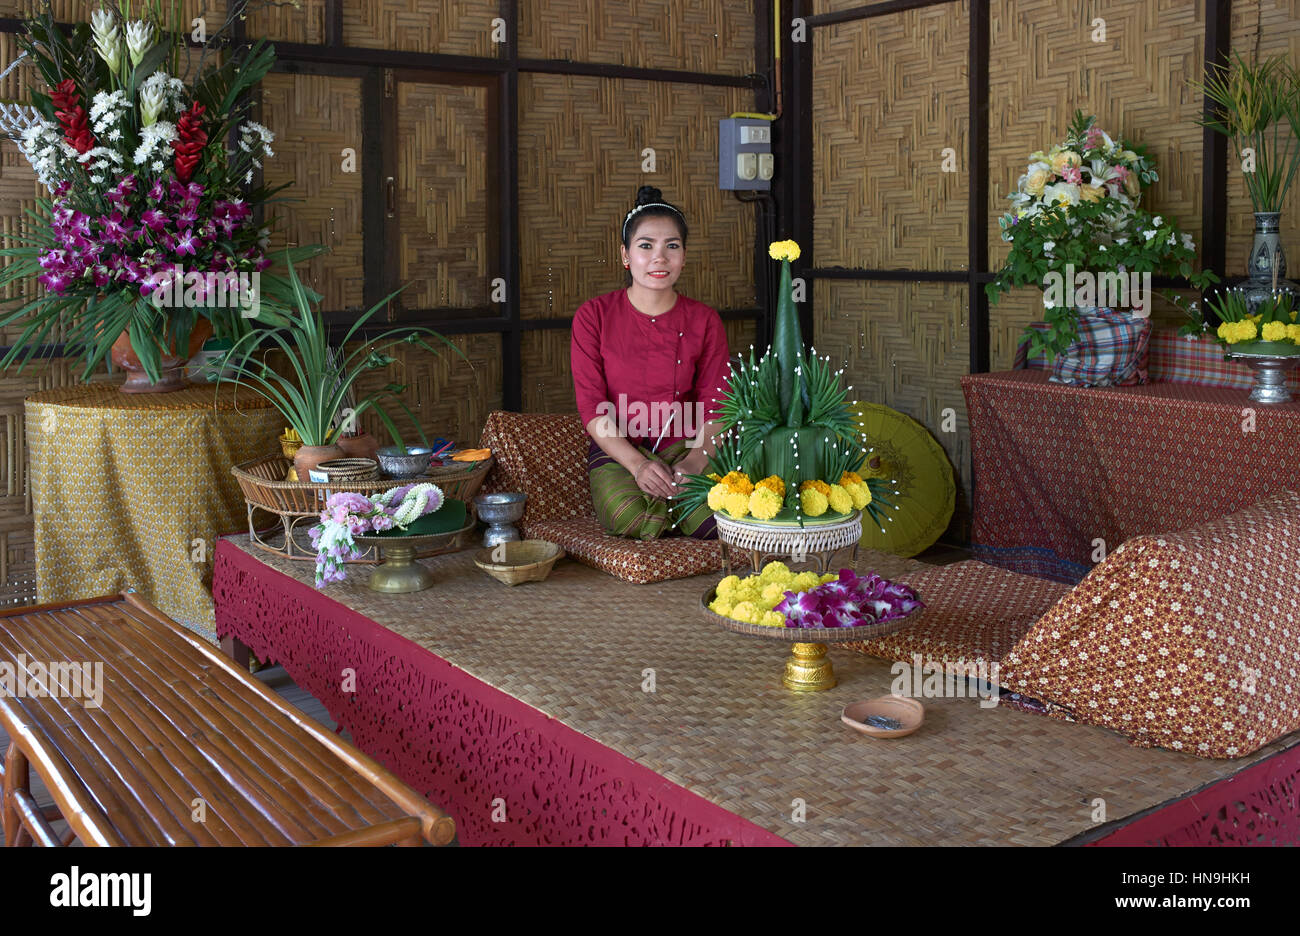 Thailandia interni casa tradizionale con la donna tailandese in abito tradizionale. Centro di arte e cultura thailandese. Thailandia Sud-est asiatico Foto Stock